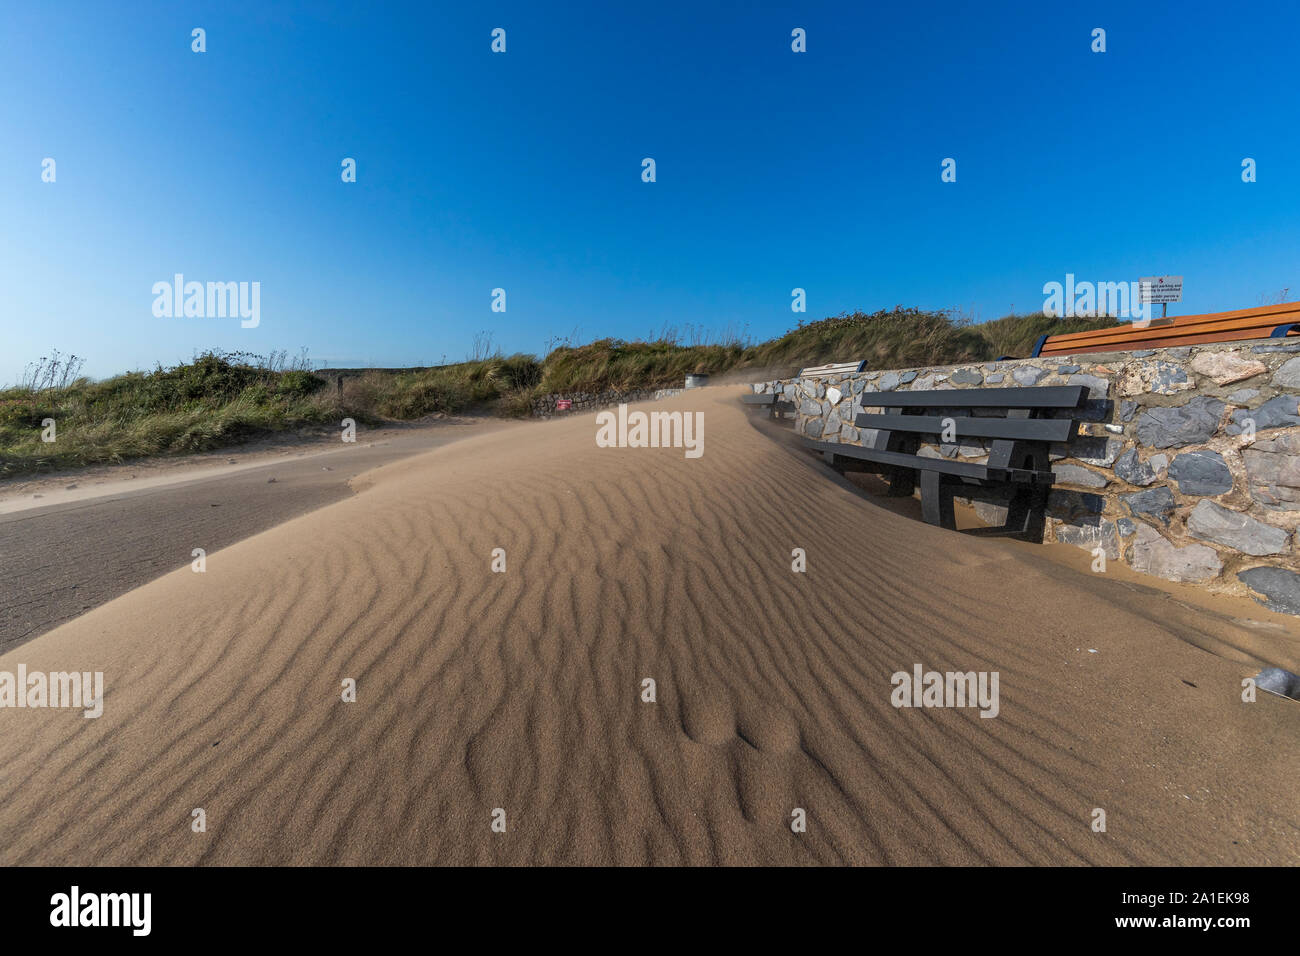 El viento sopla la arena de la playa cubre asientos de plástico reciclado bancos en una nueva duna. Port Eynon, Gower, AONB, Swansea, Gales, la Península de Gower, Foto de stock